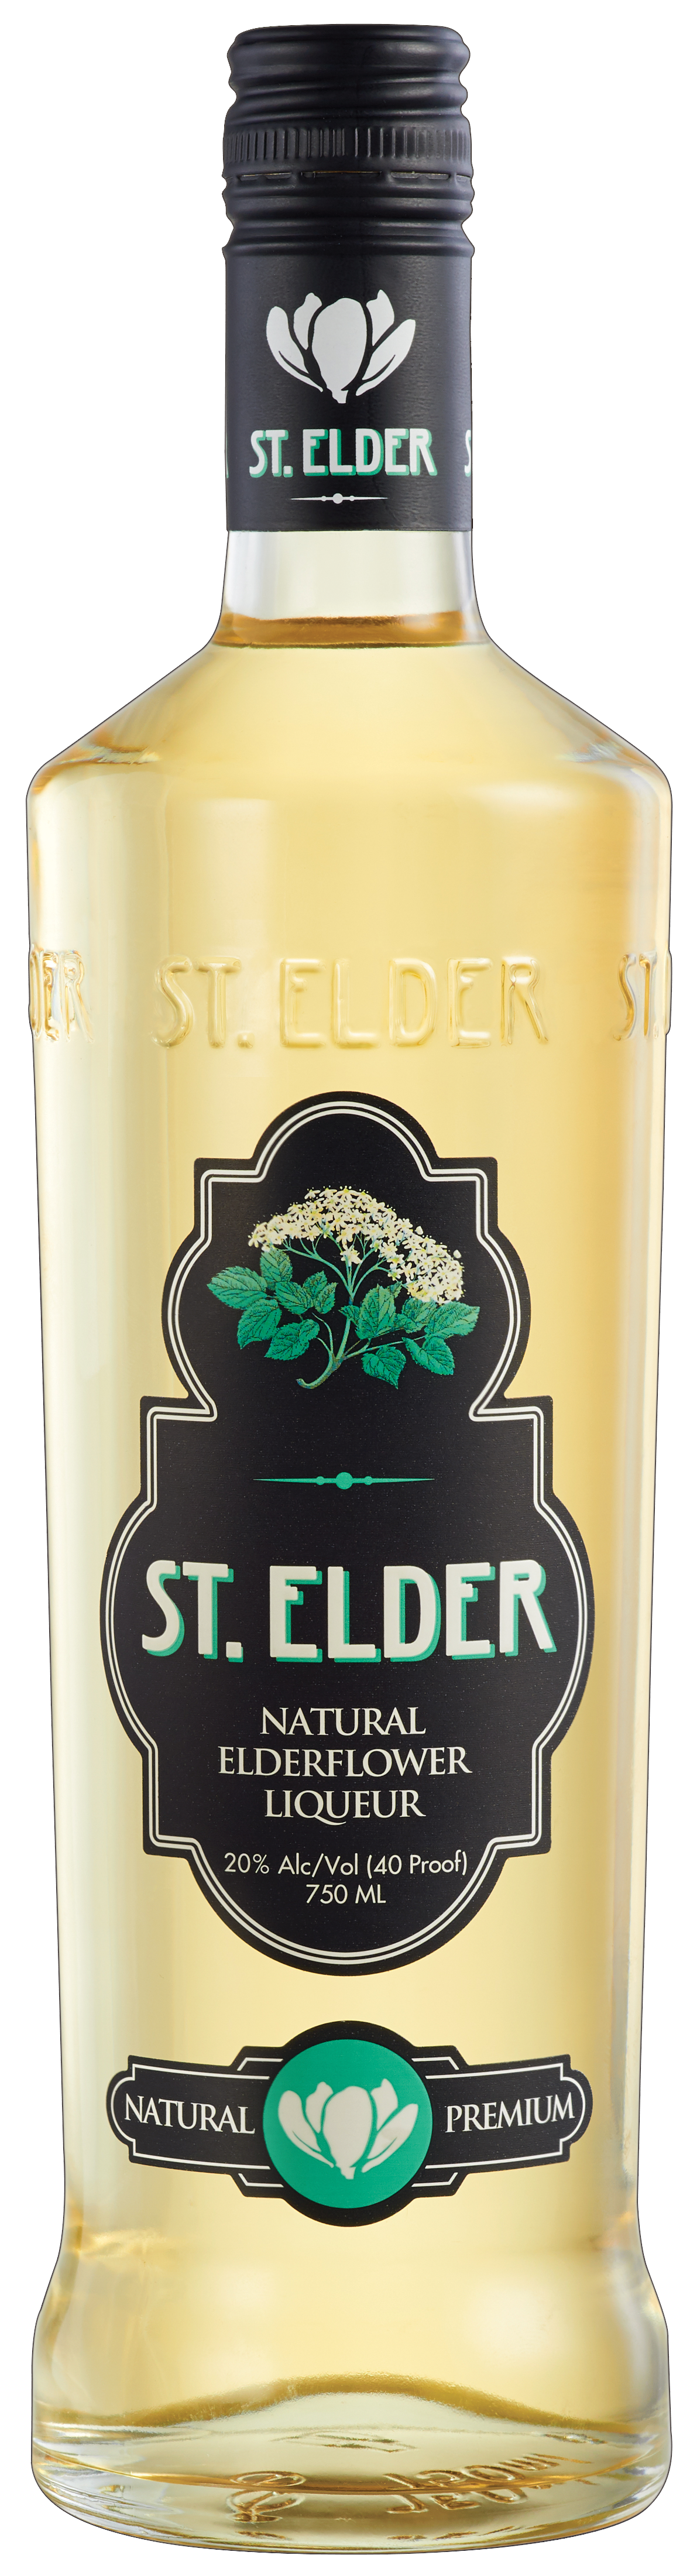 ST. ELDER ELDERFLOWER BOTTLE SHOT